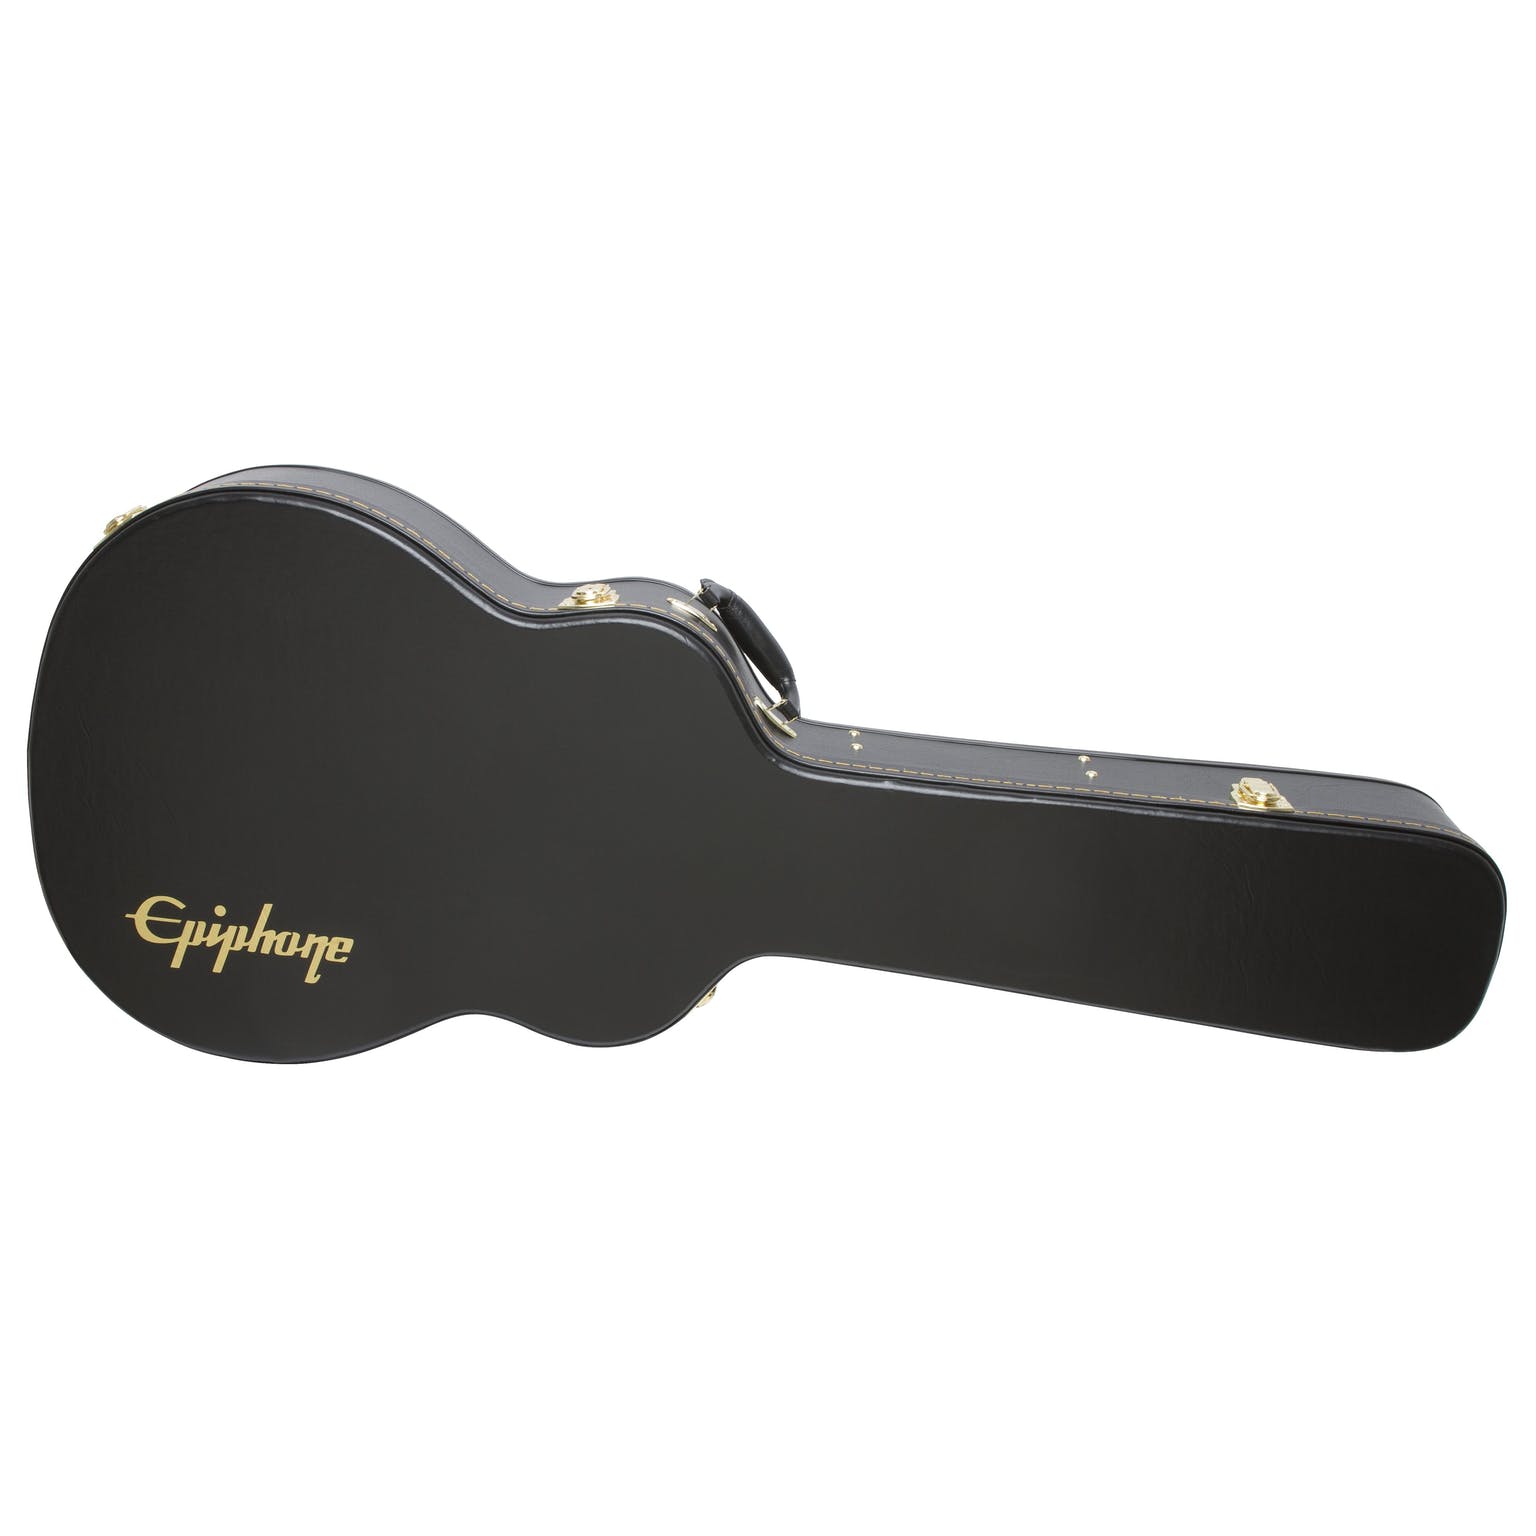 Epiphone EJUMBO Acoustic Guitar Case